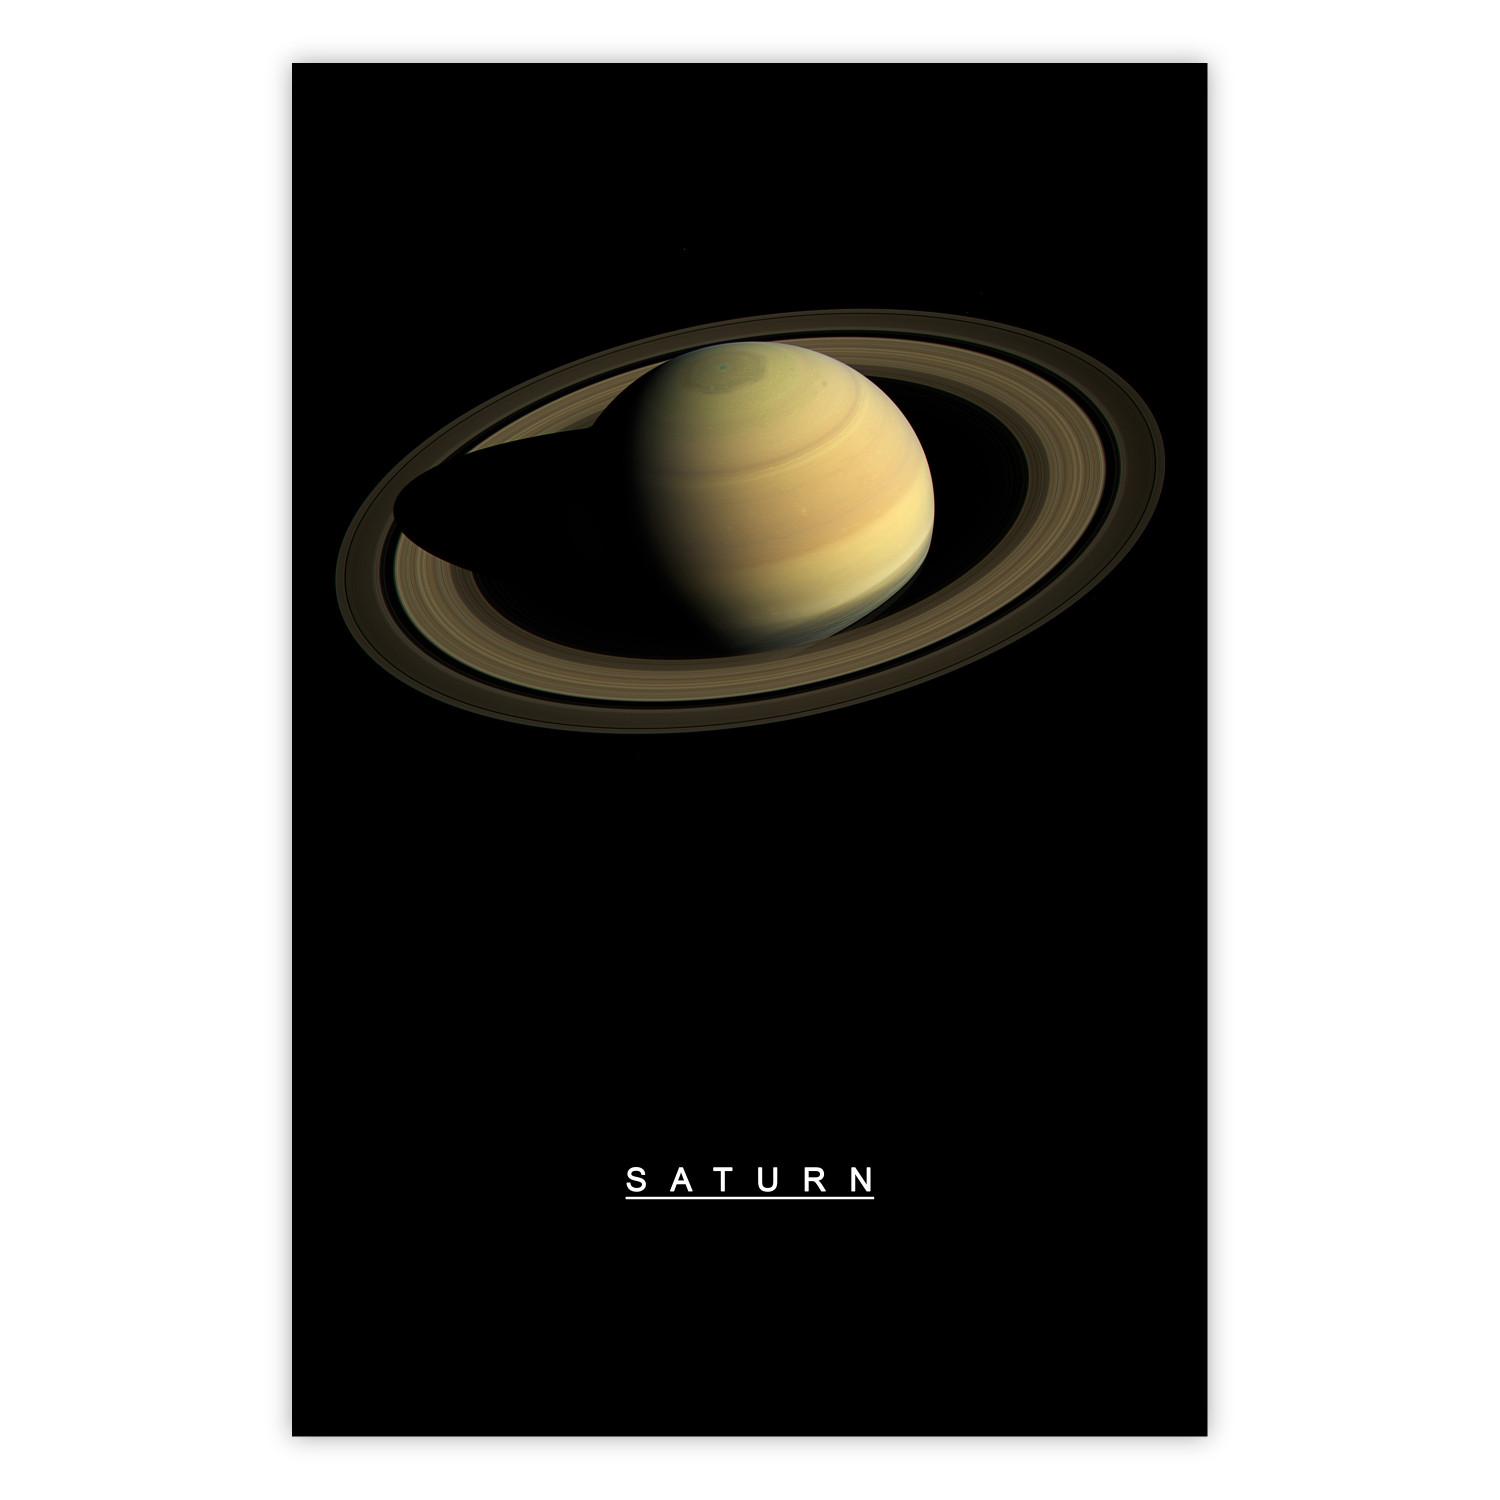 Poster Saturno: rey lunas, inscripciones inglés